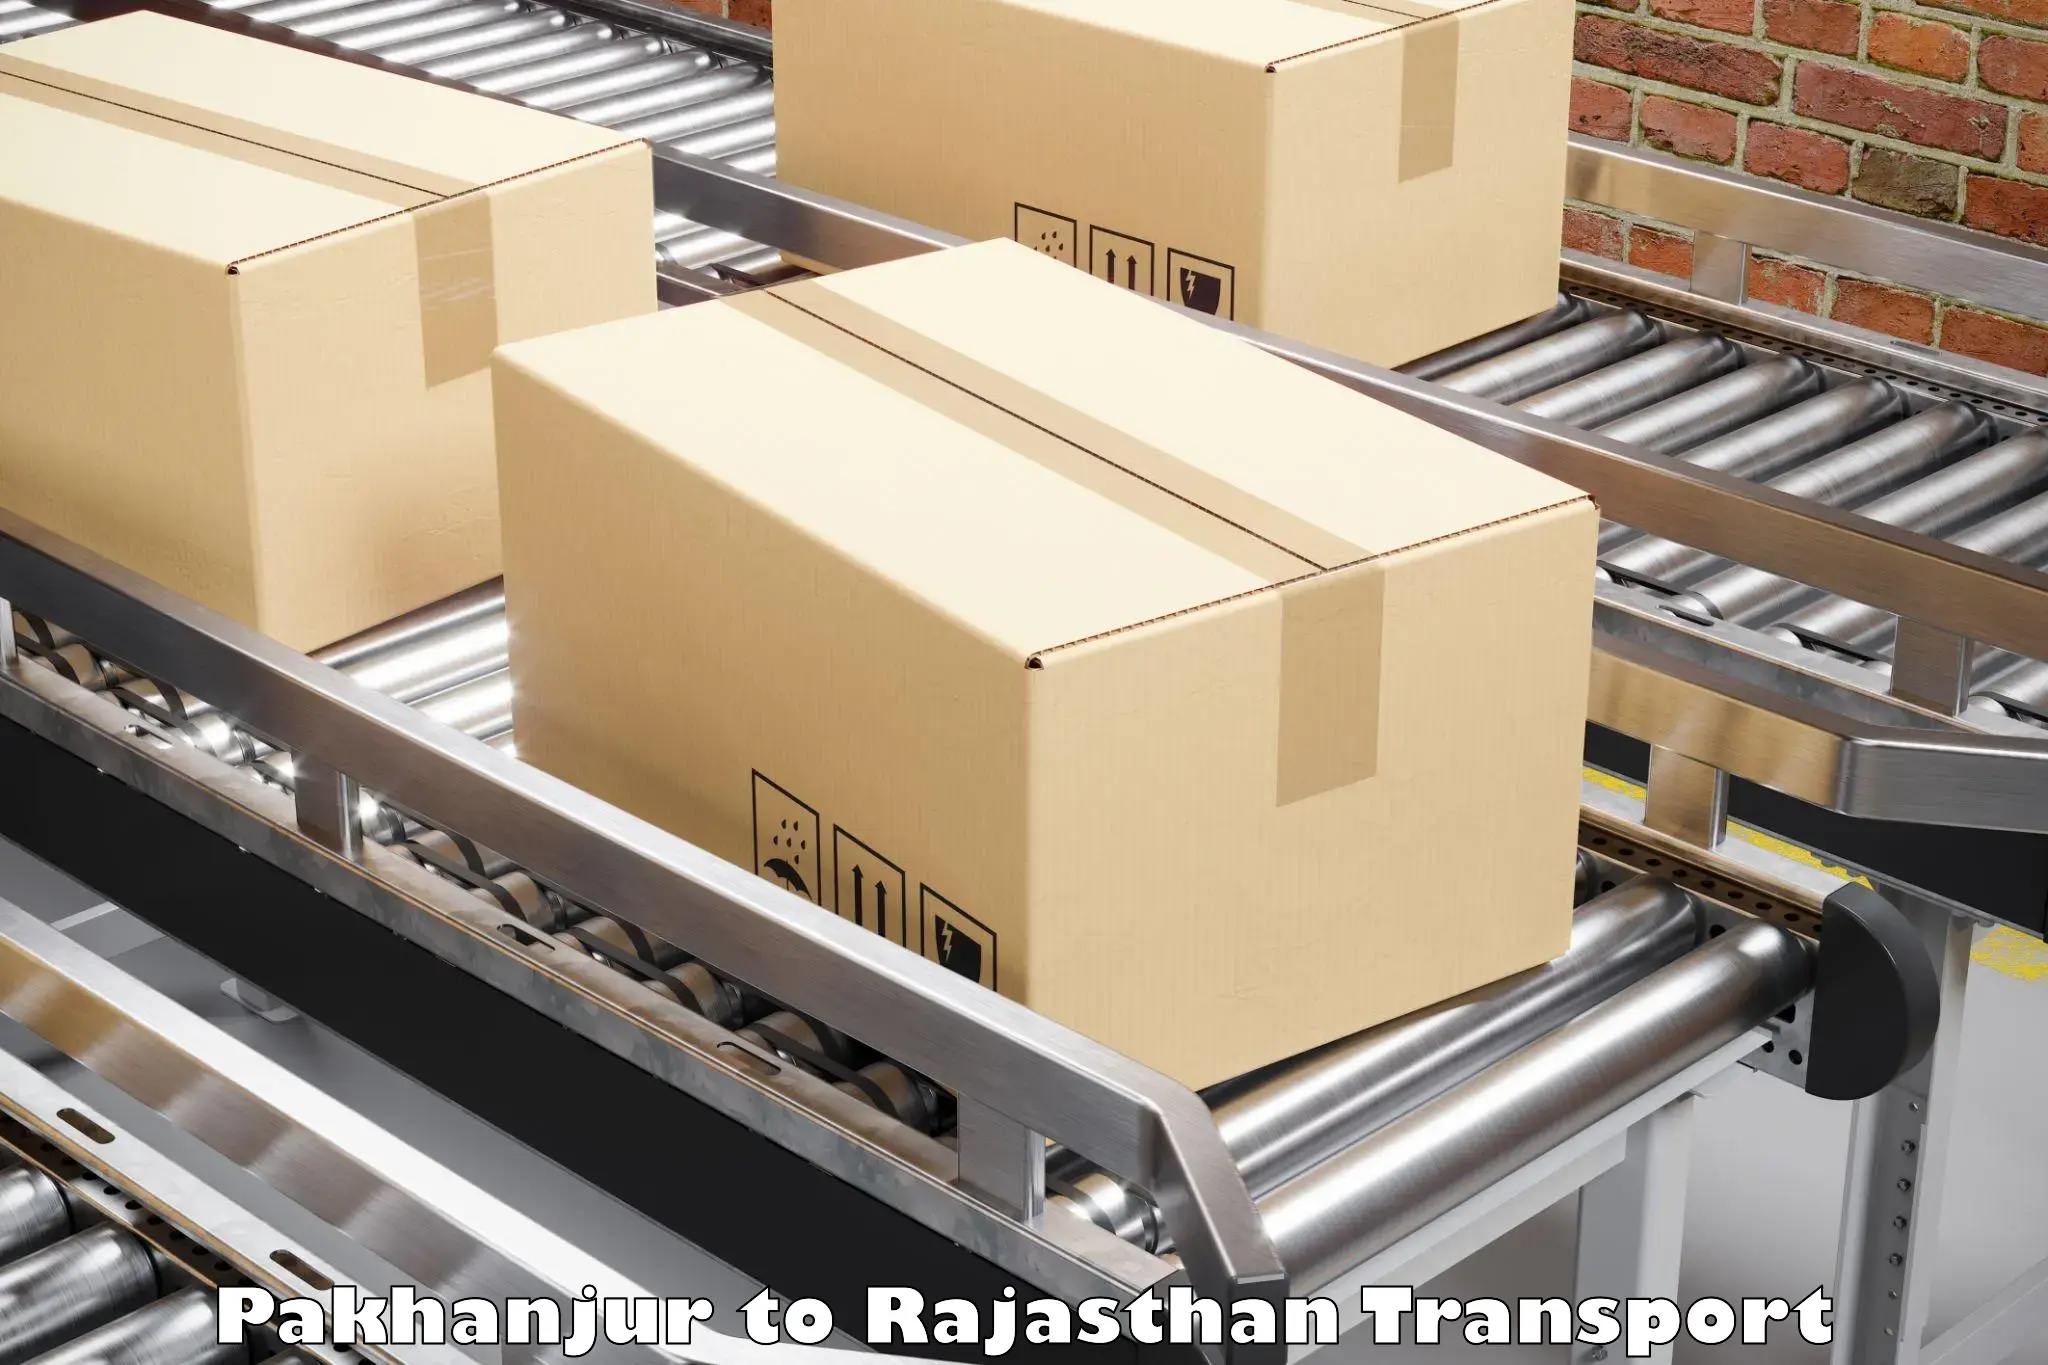 Transport shared services Pakhanjur to Bhilwara